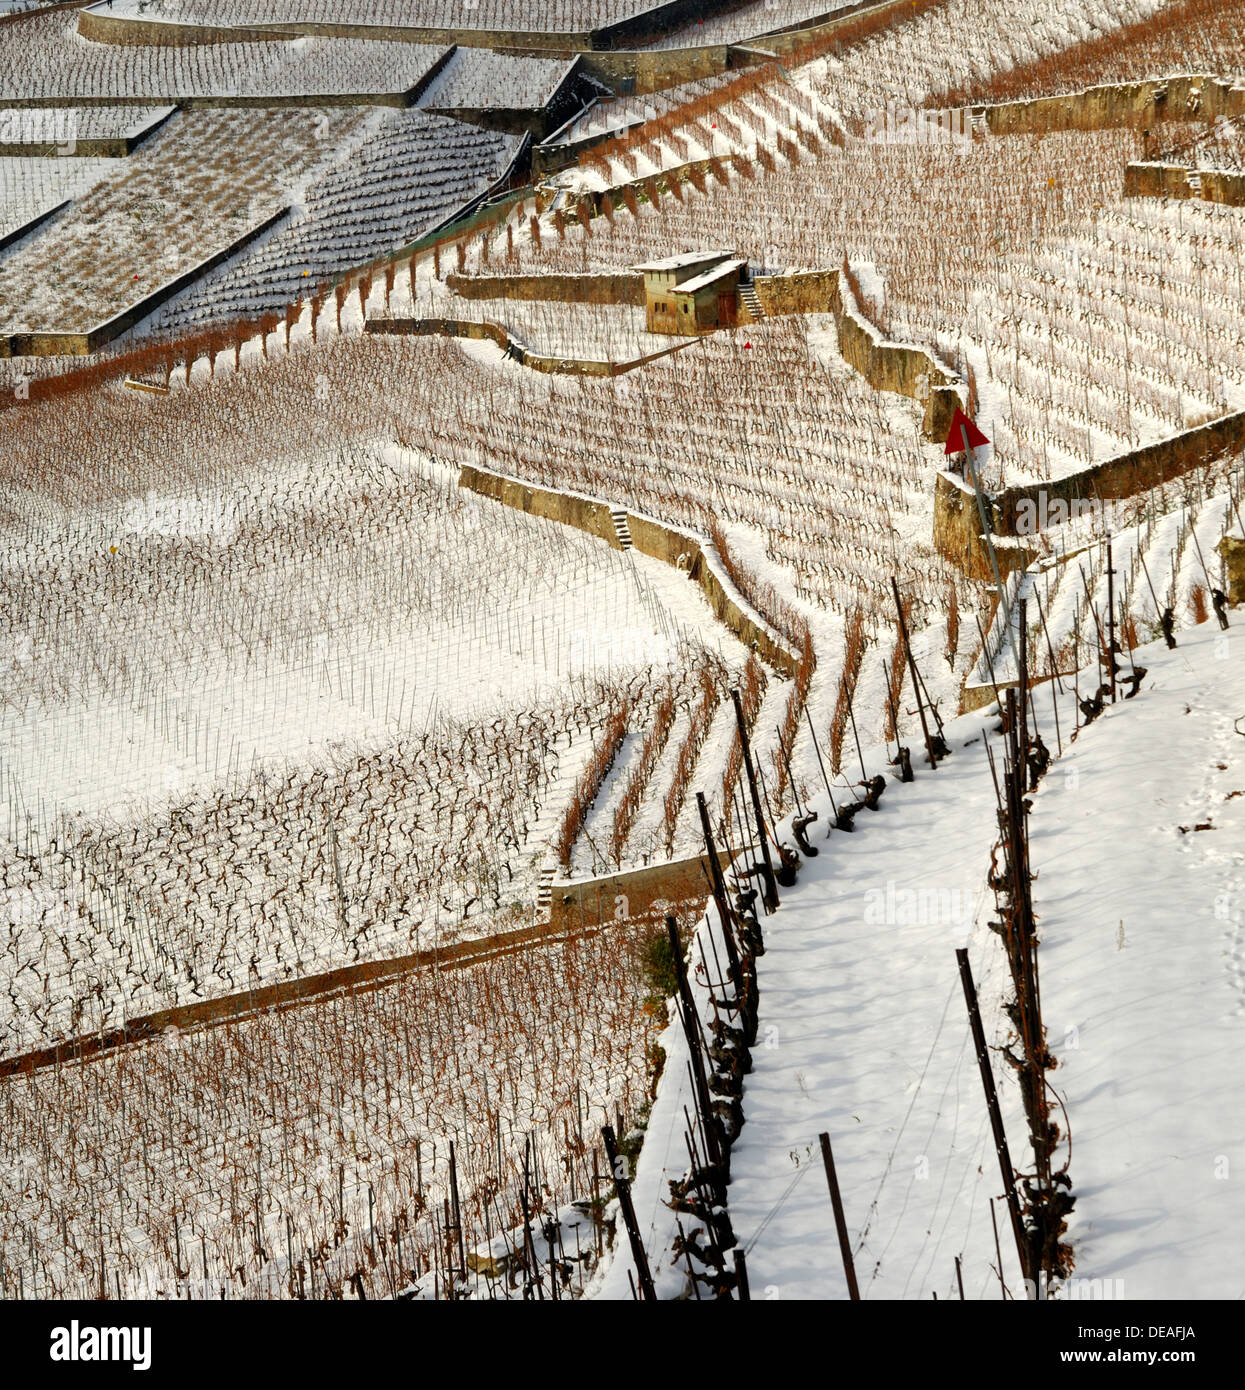 Vigneti terrazzati in inverno, sito patrimonio mondiale dell'UNESCO, Lavaux vicino Rivaz, Canton Vaud, Svizzera, Europa Foto Stock